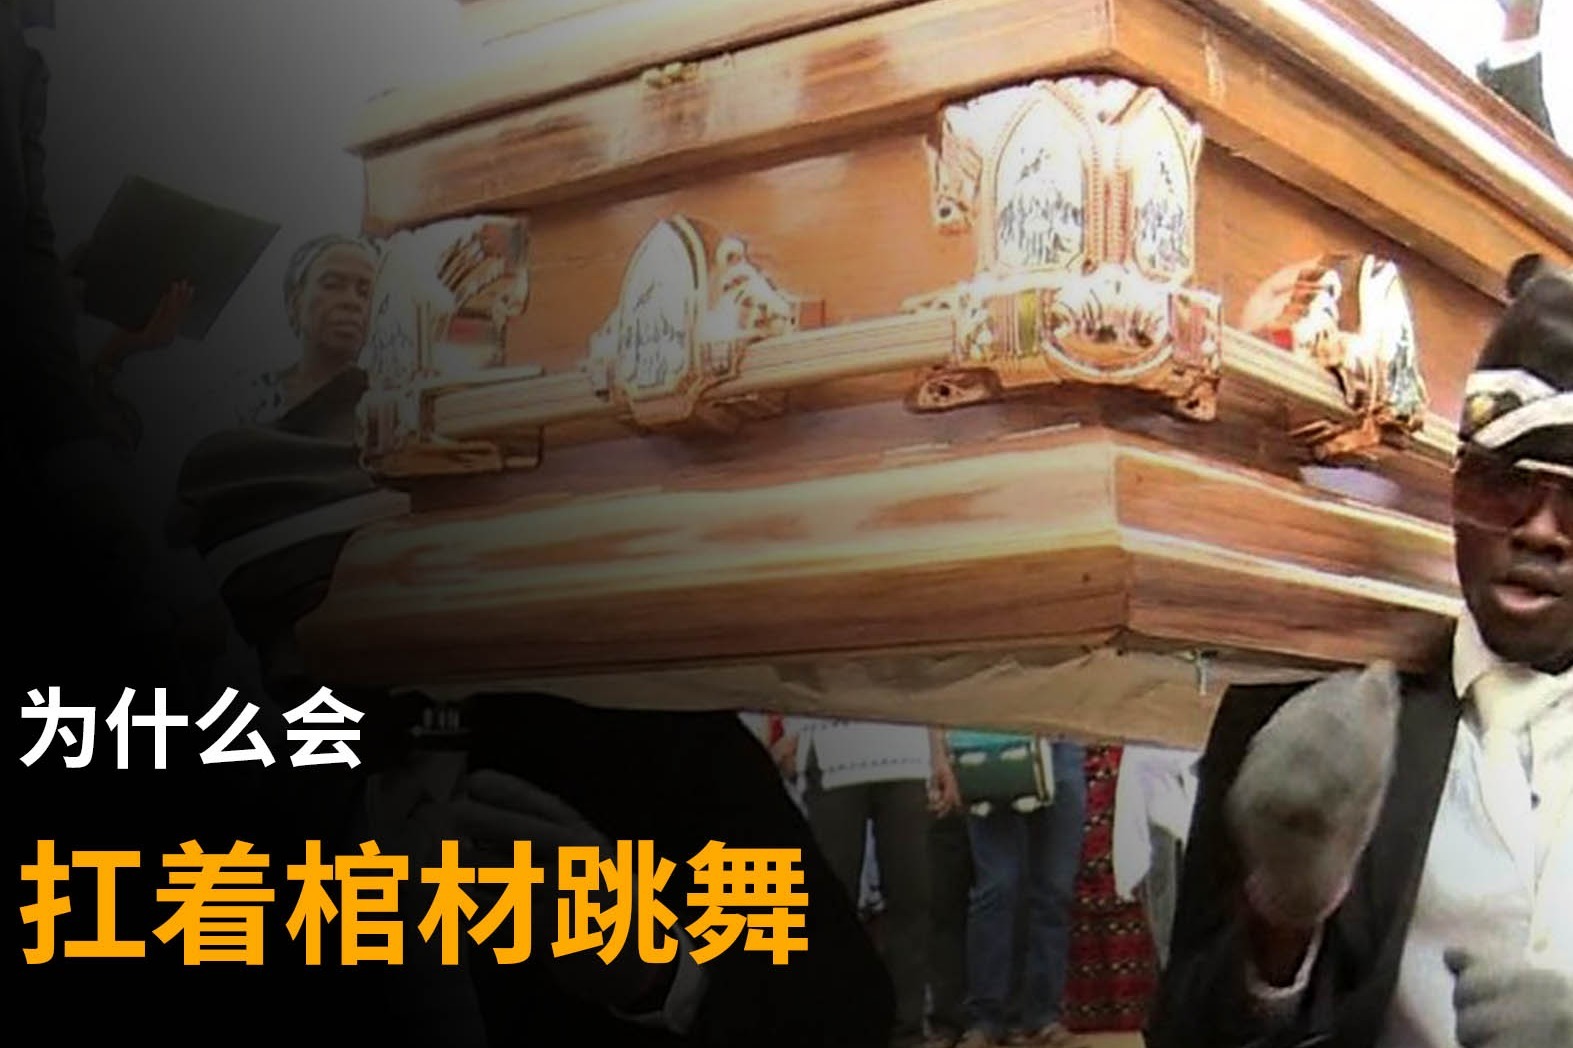 黑人抬棺BBC原视频Funeral dancers for hire- BBC News_哔哩哔哩 (゜-゜)つロ 干杯~-bilibili